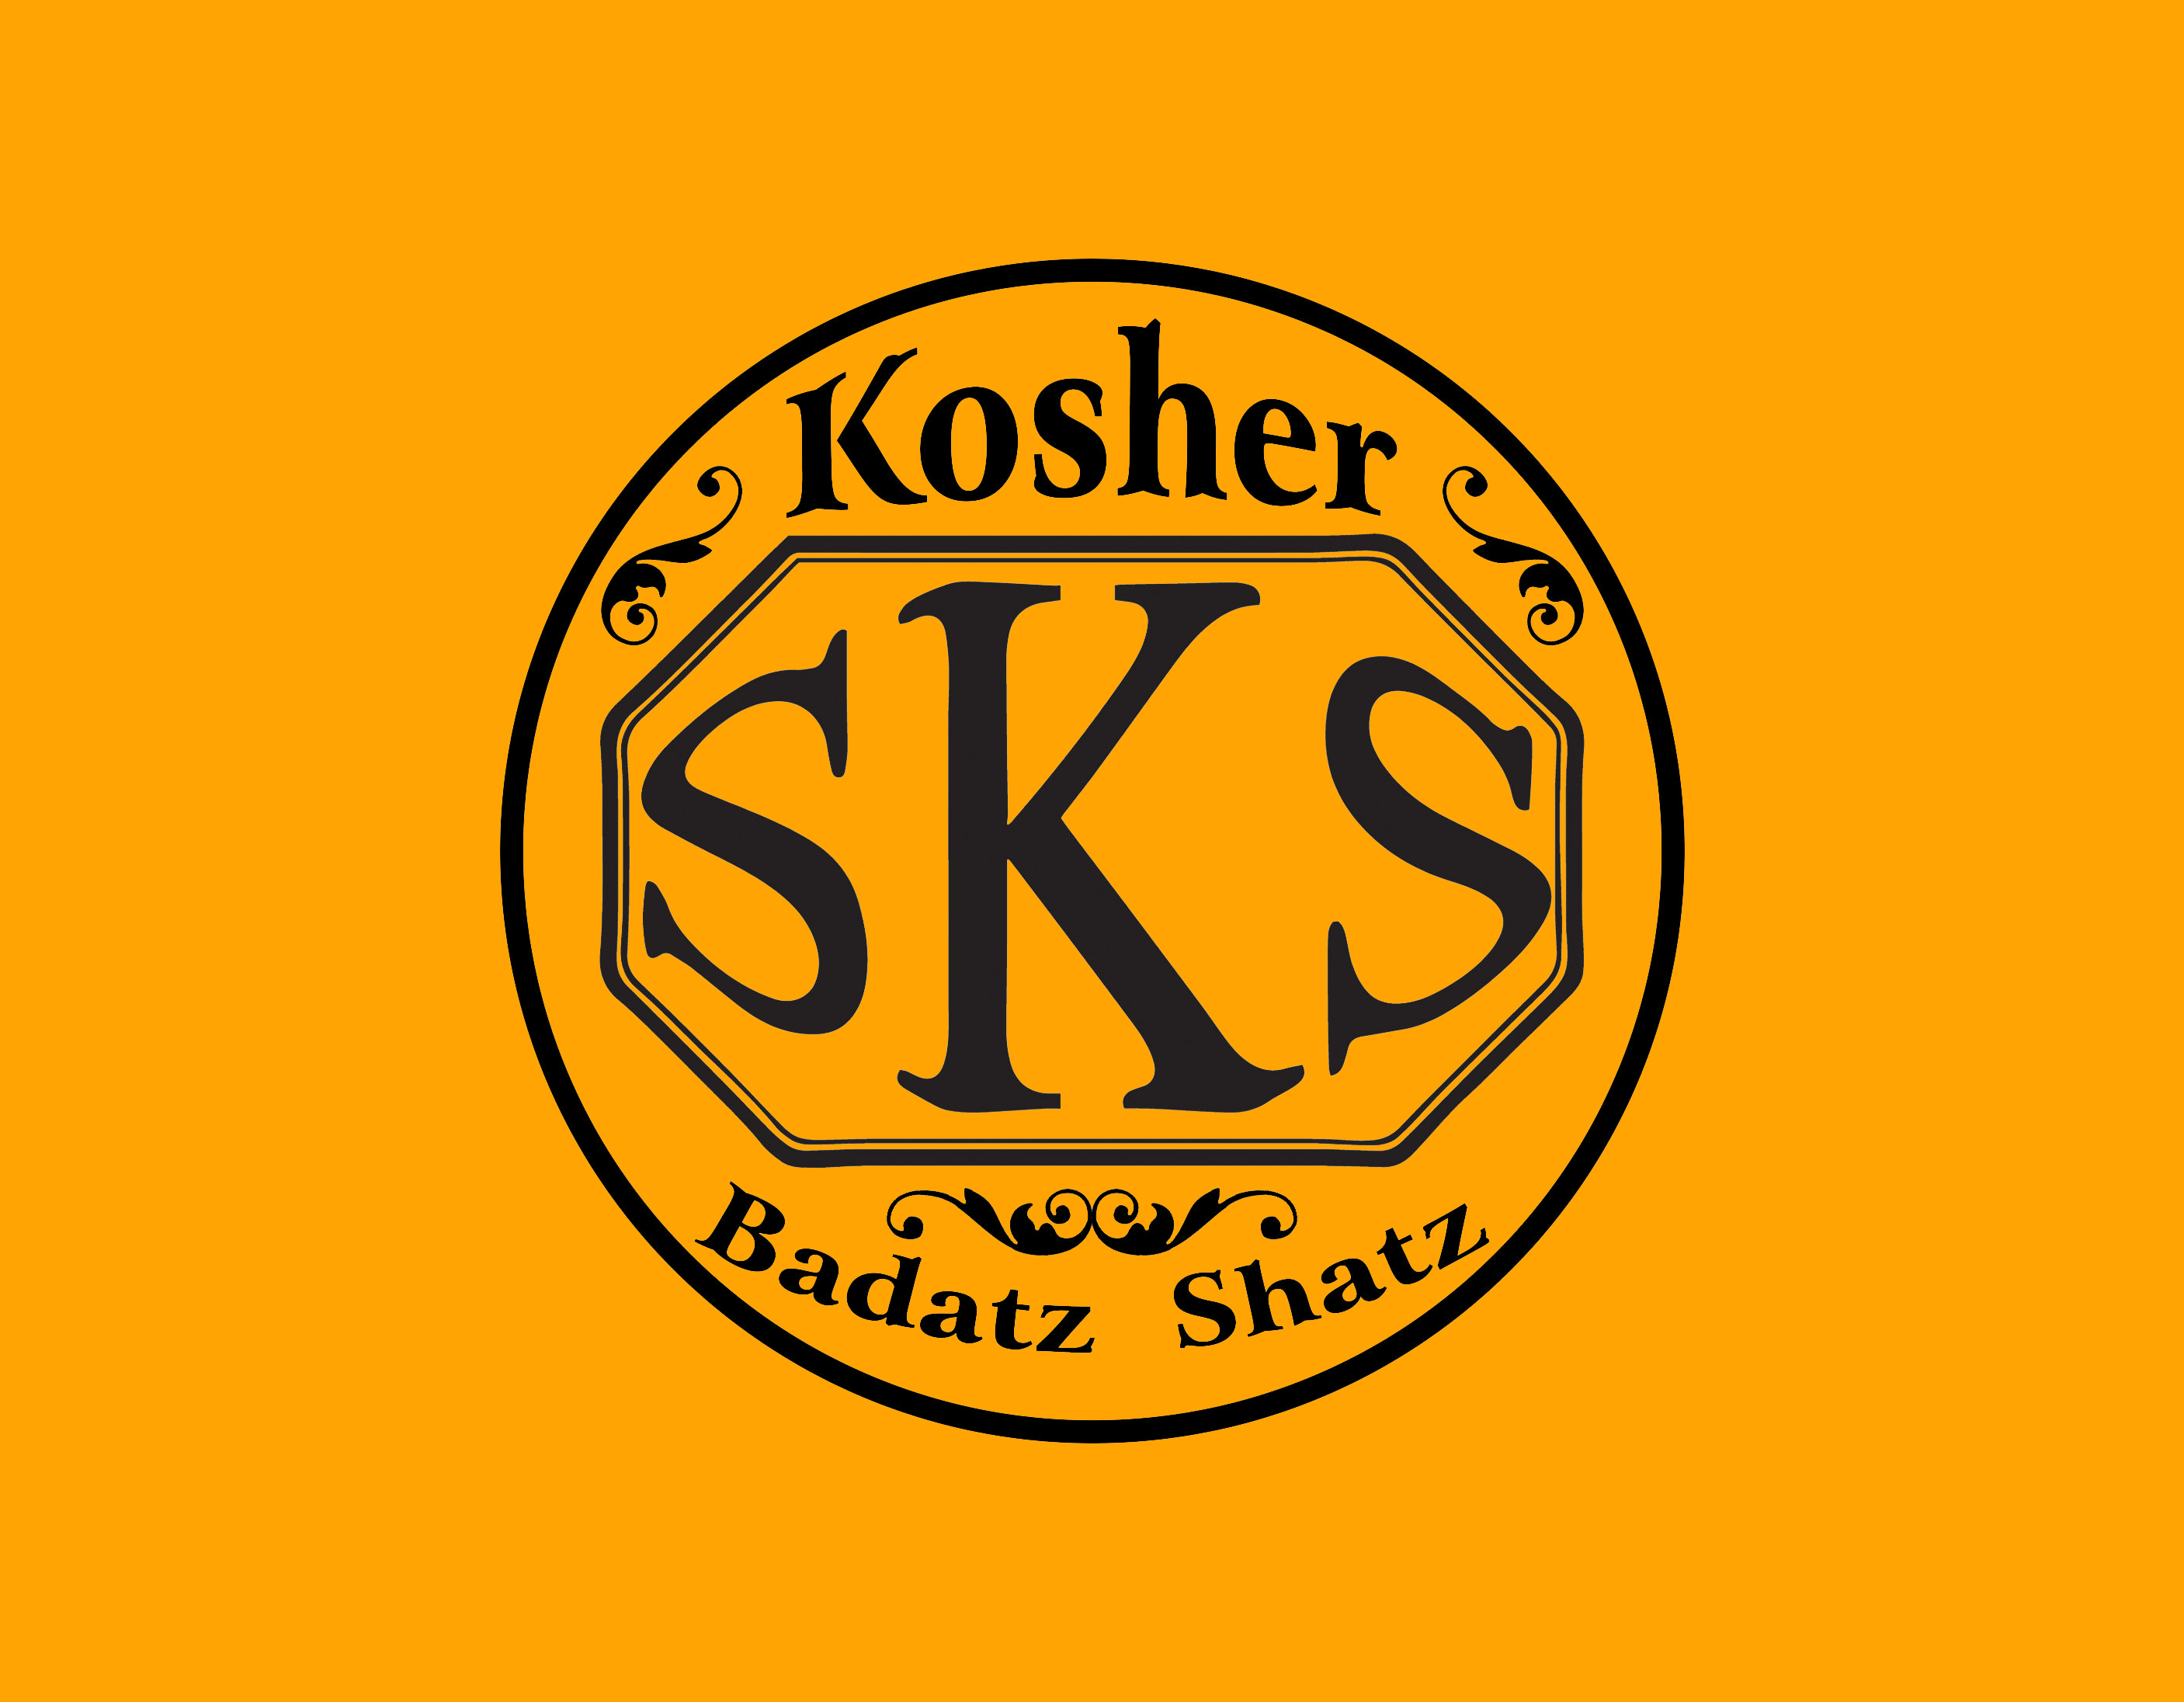 SKS Kosher